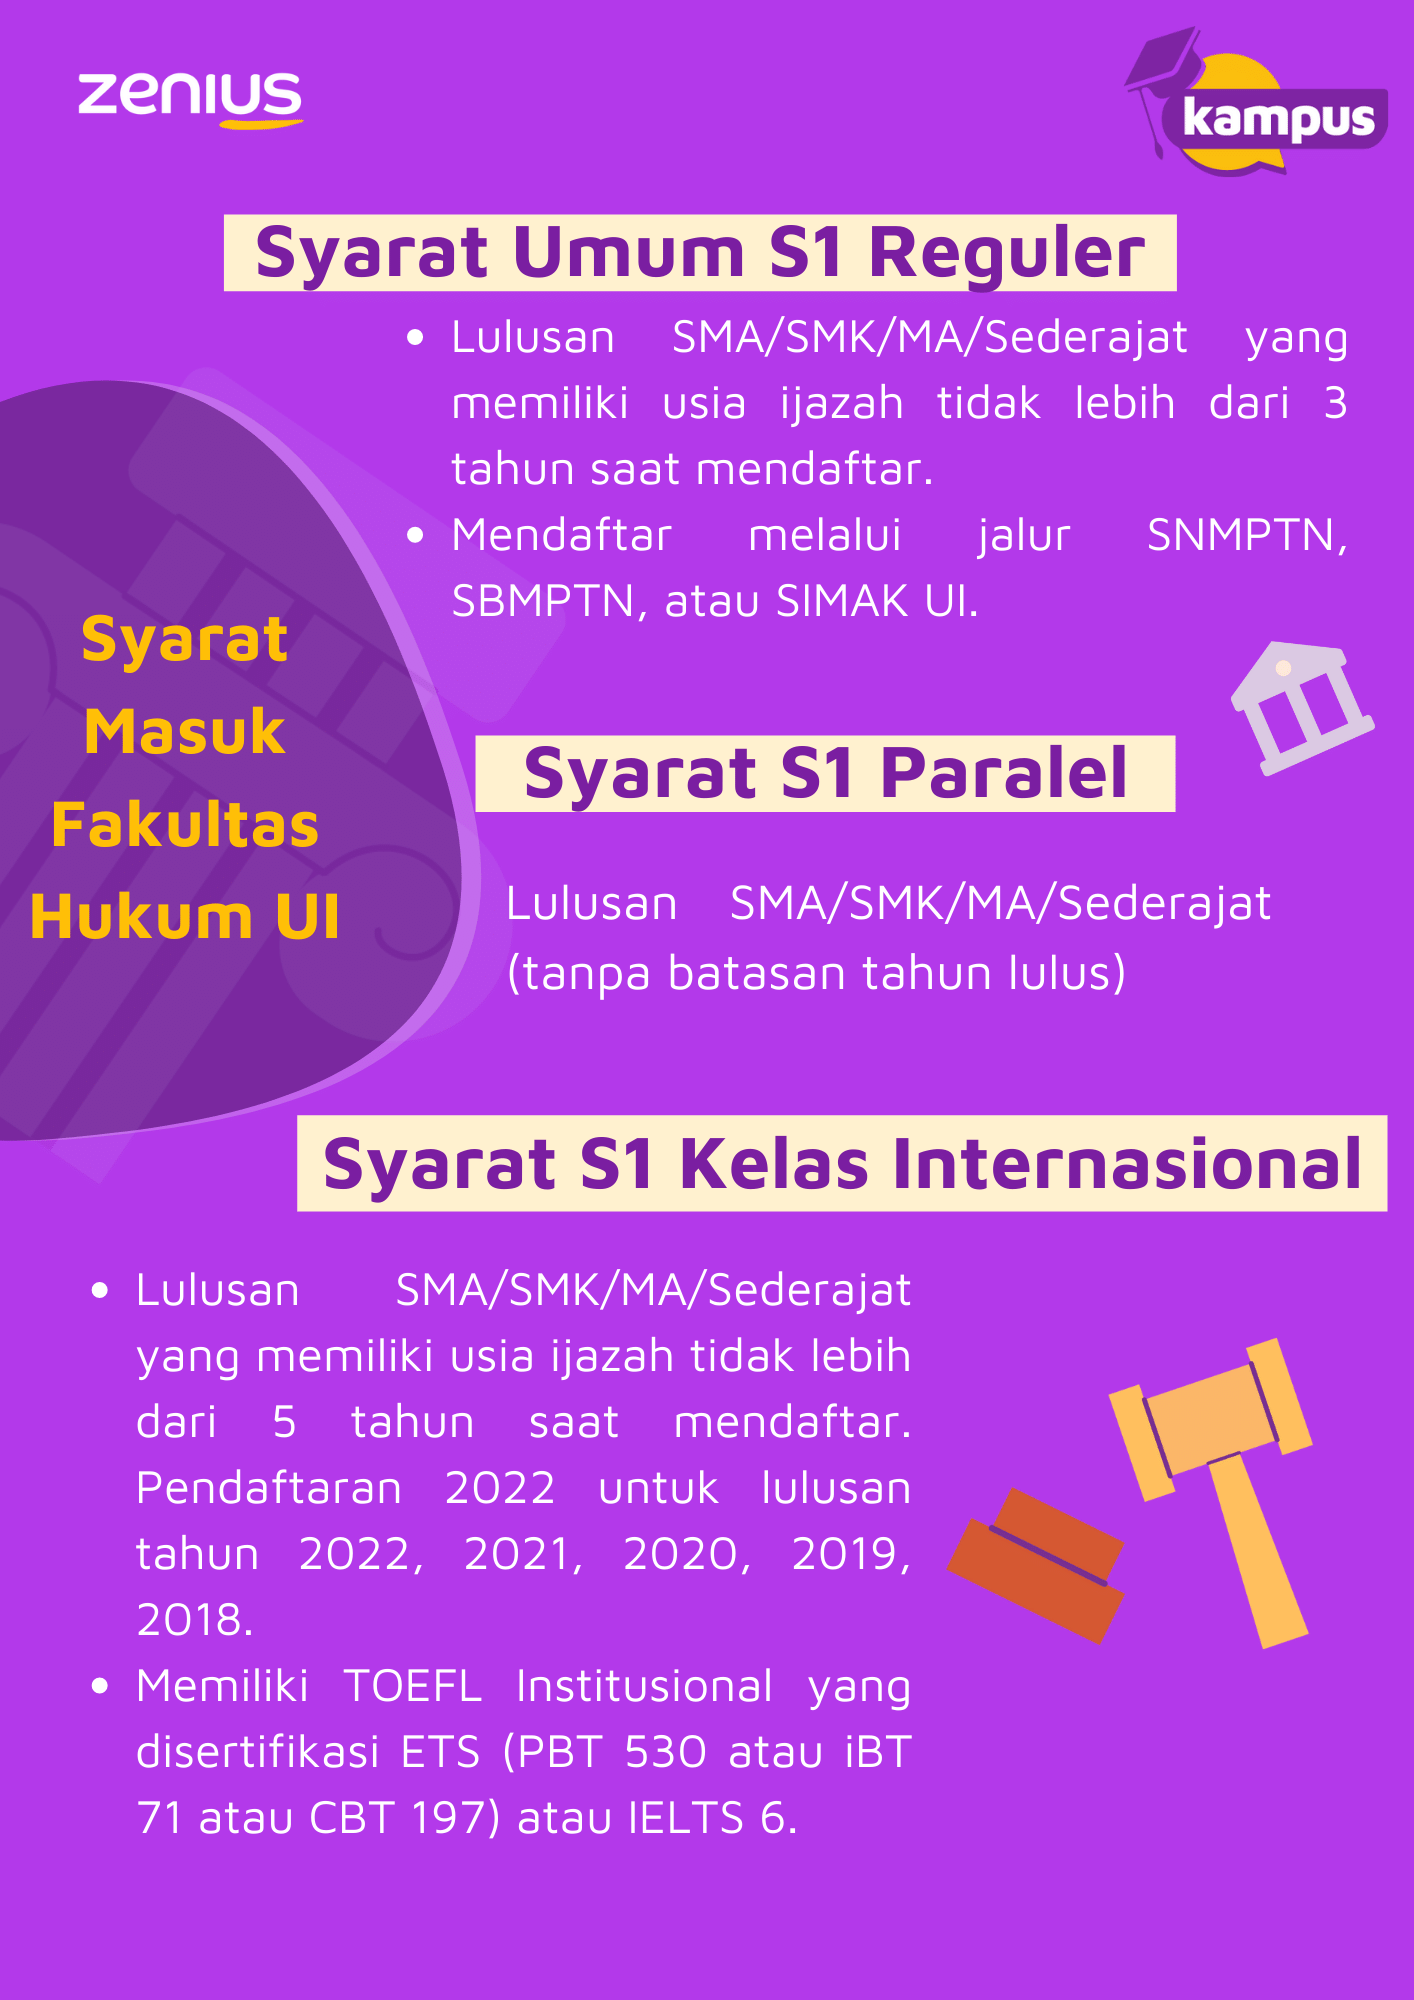 Info Syarat Masuk Fakultas Hukum UI